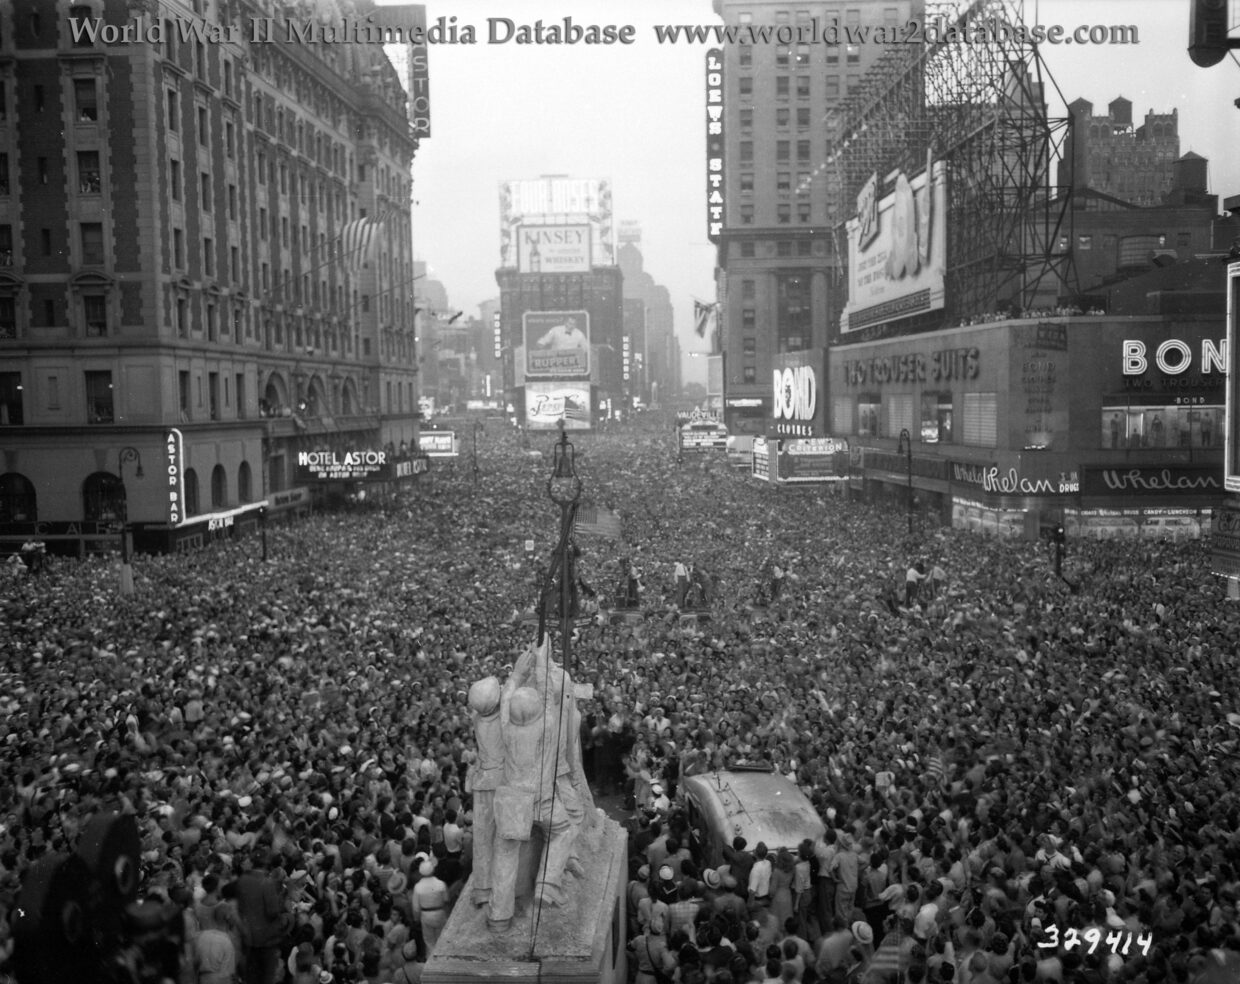 Crowds Celebrate V-J Day in Times Square